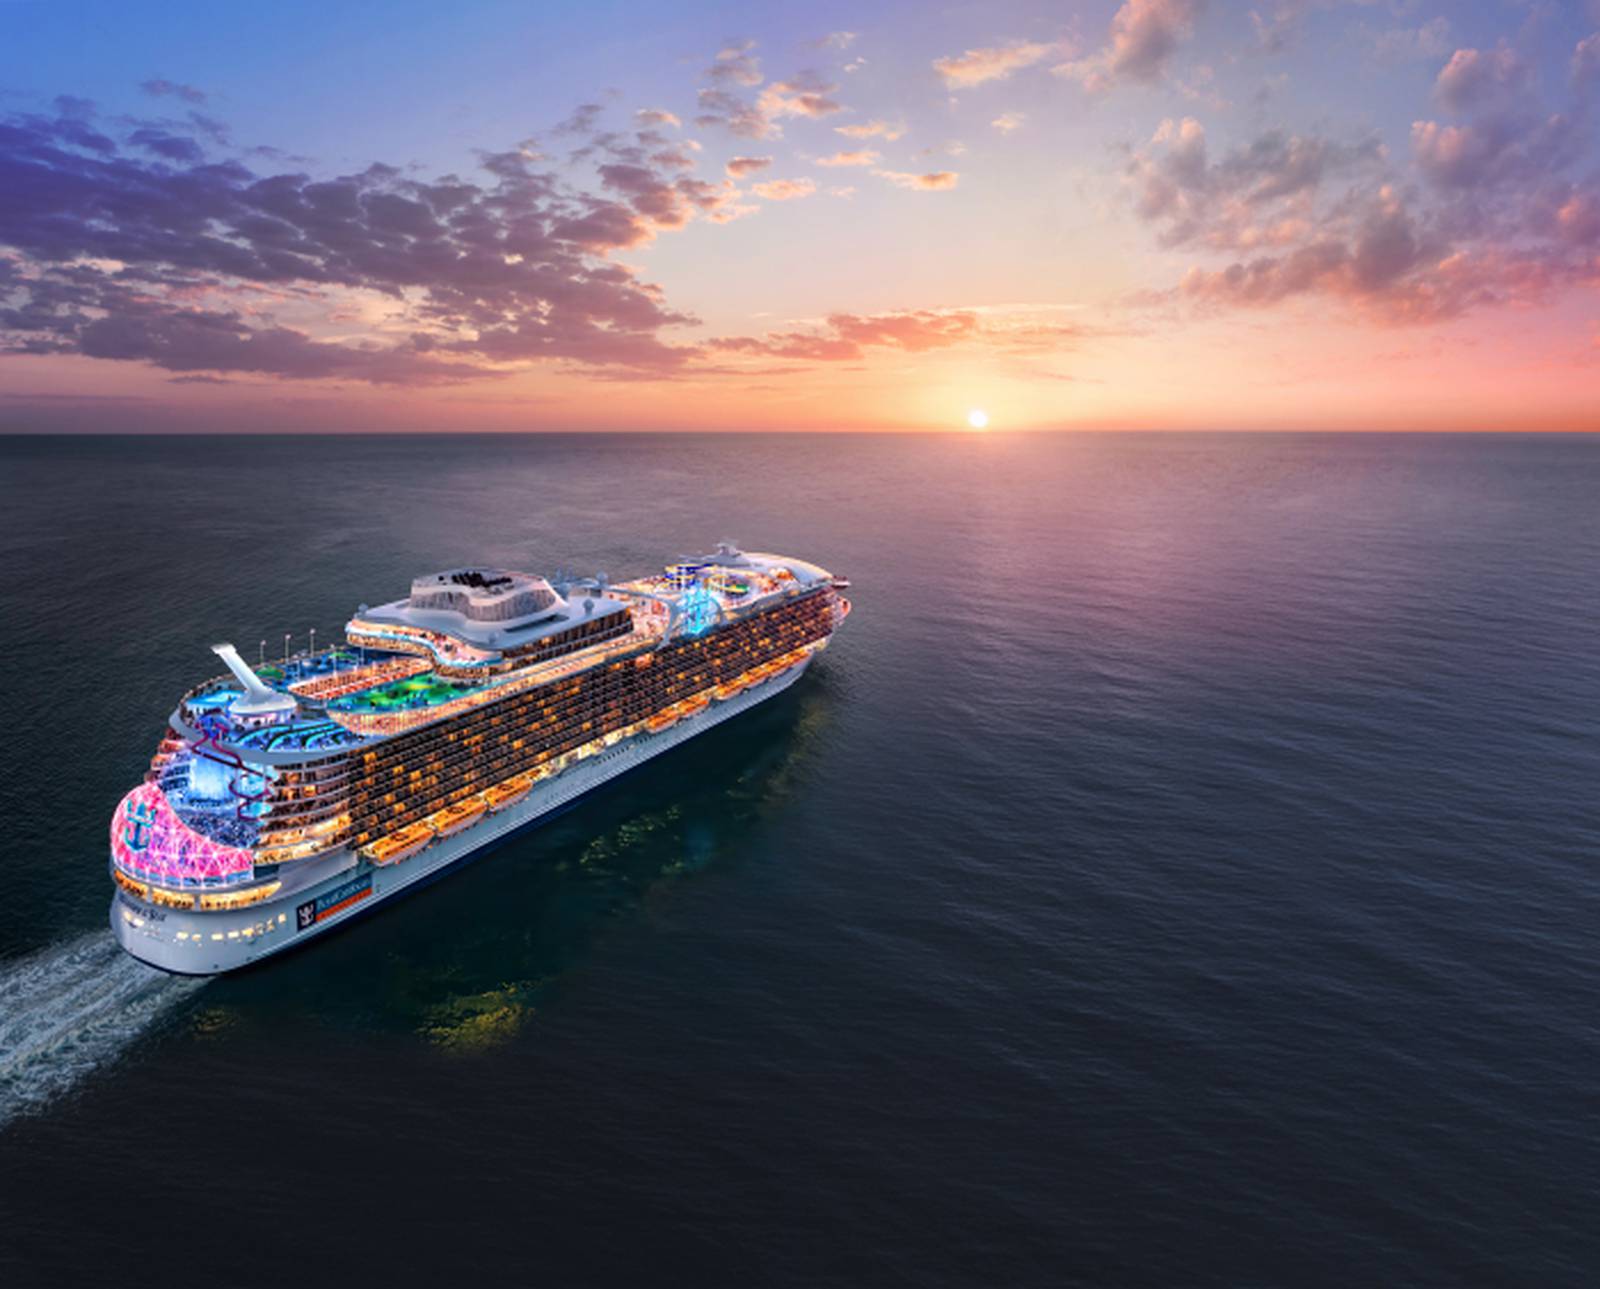 utopia cruise ship launch date